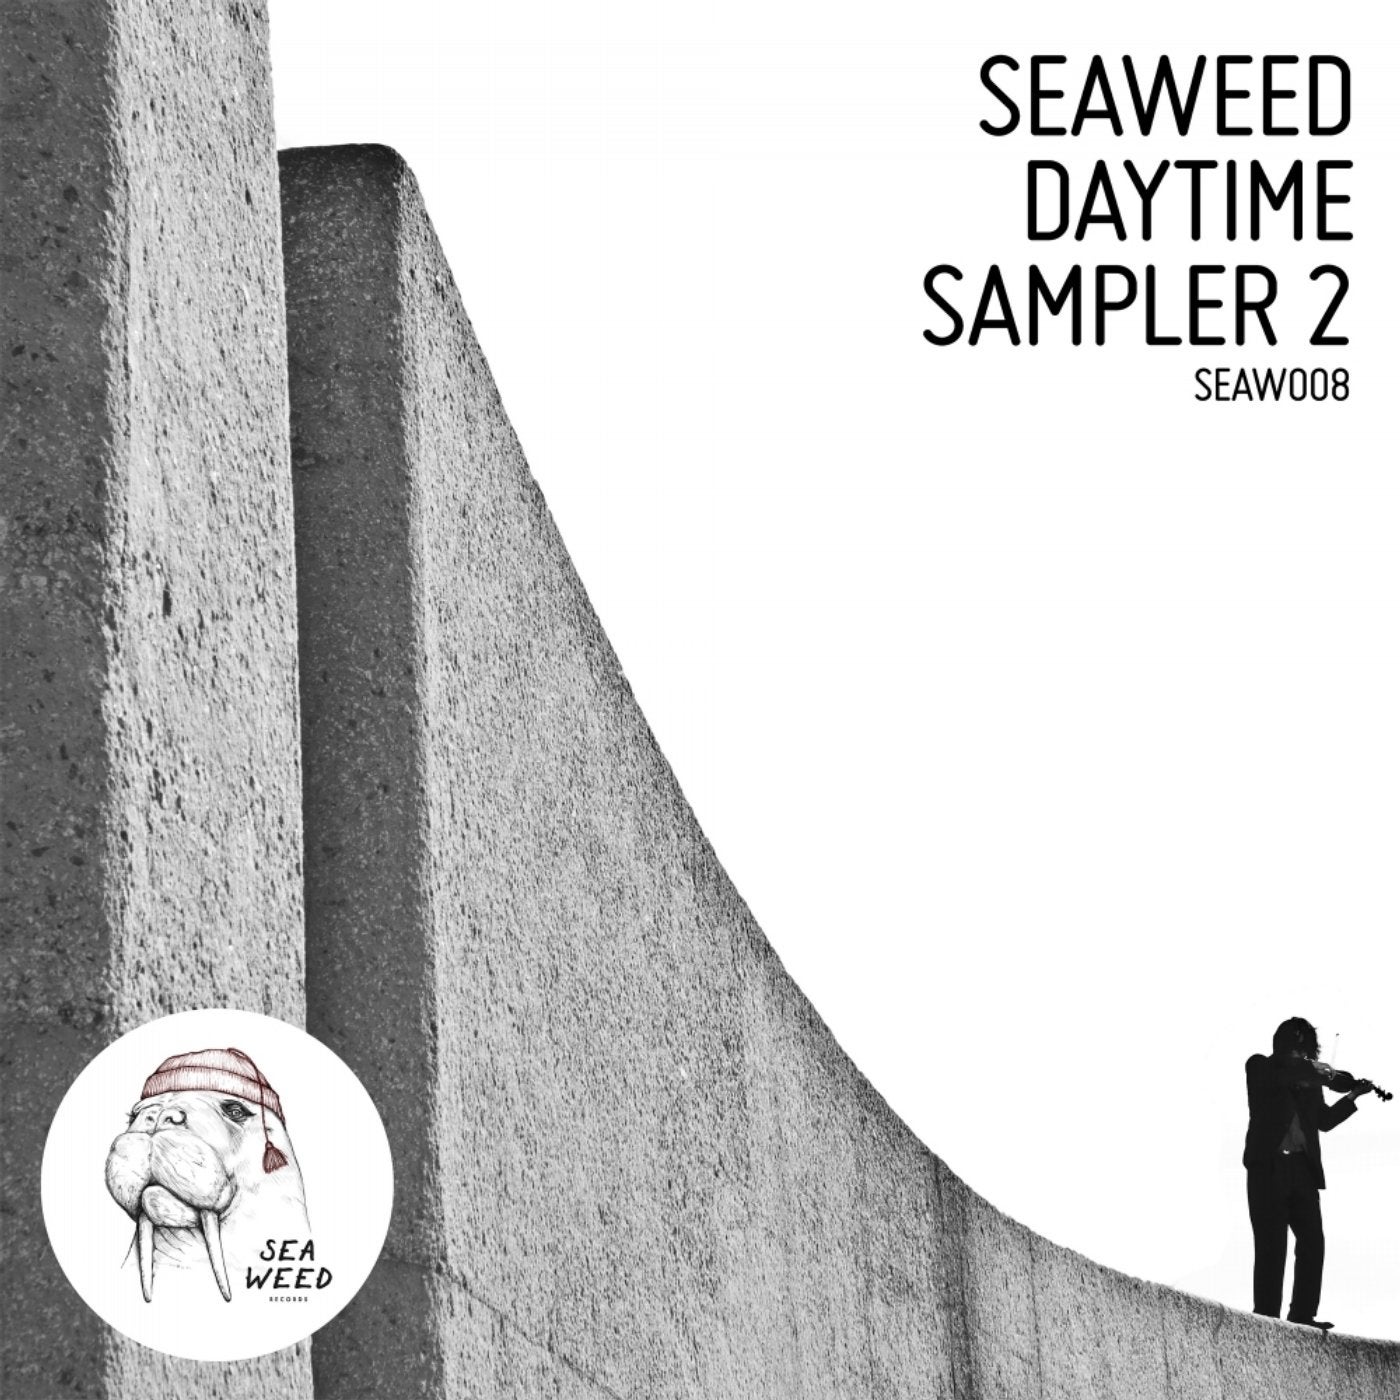 Seaweed Daytime Sampler 2